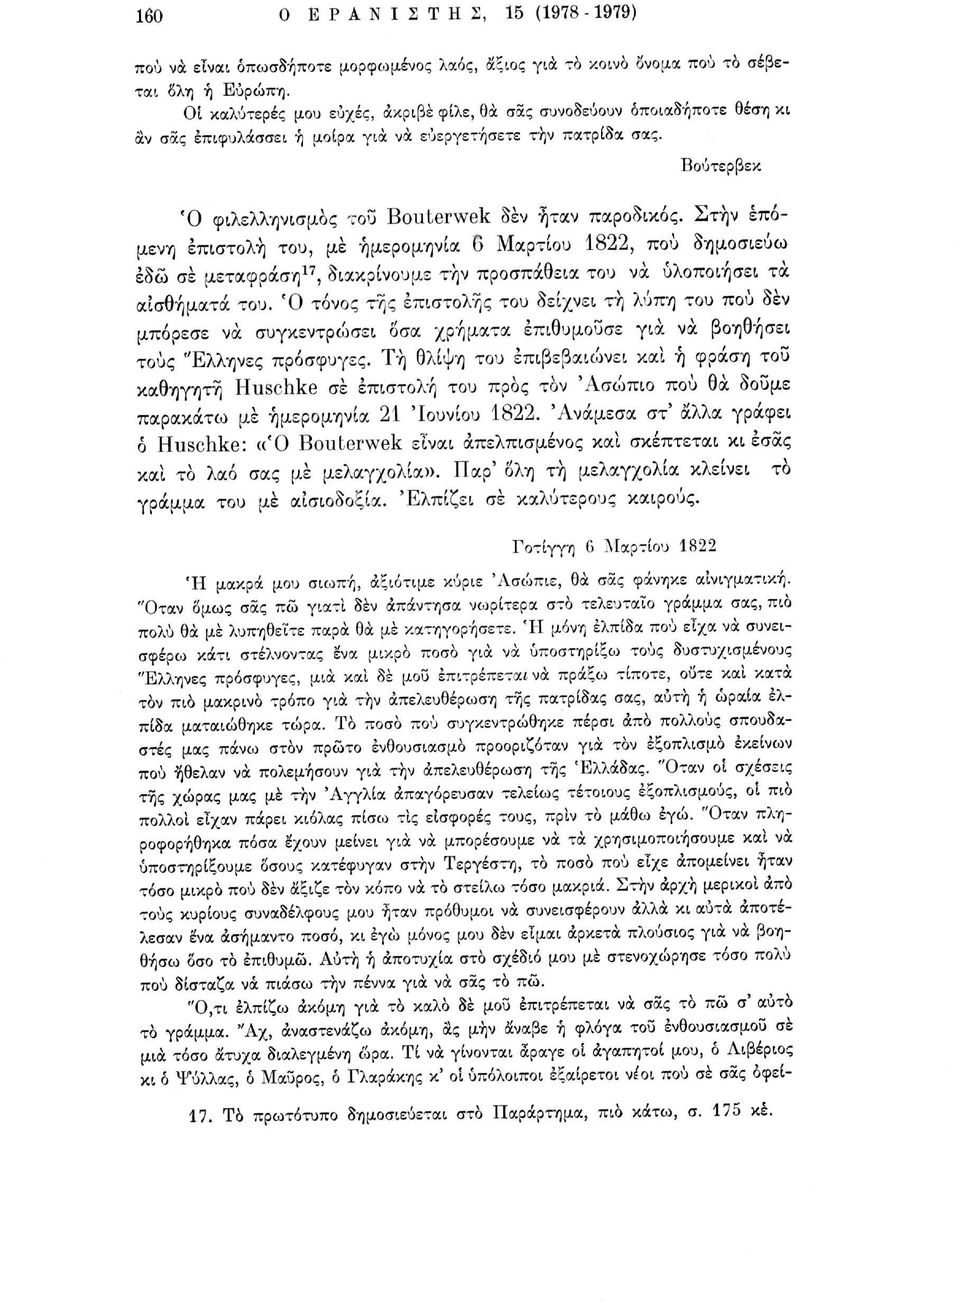 Στην επόμενη επιστολή του, με ημερομηνία 6 Μαρτίου 1822, πού δημοσιεύω εδώ σε μετάφραση 17, διακρίνουμε τήν προσπάθεια του να υλοποιήσει τα αισθήματα του.